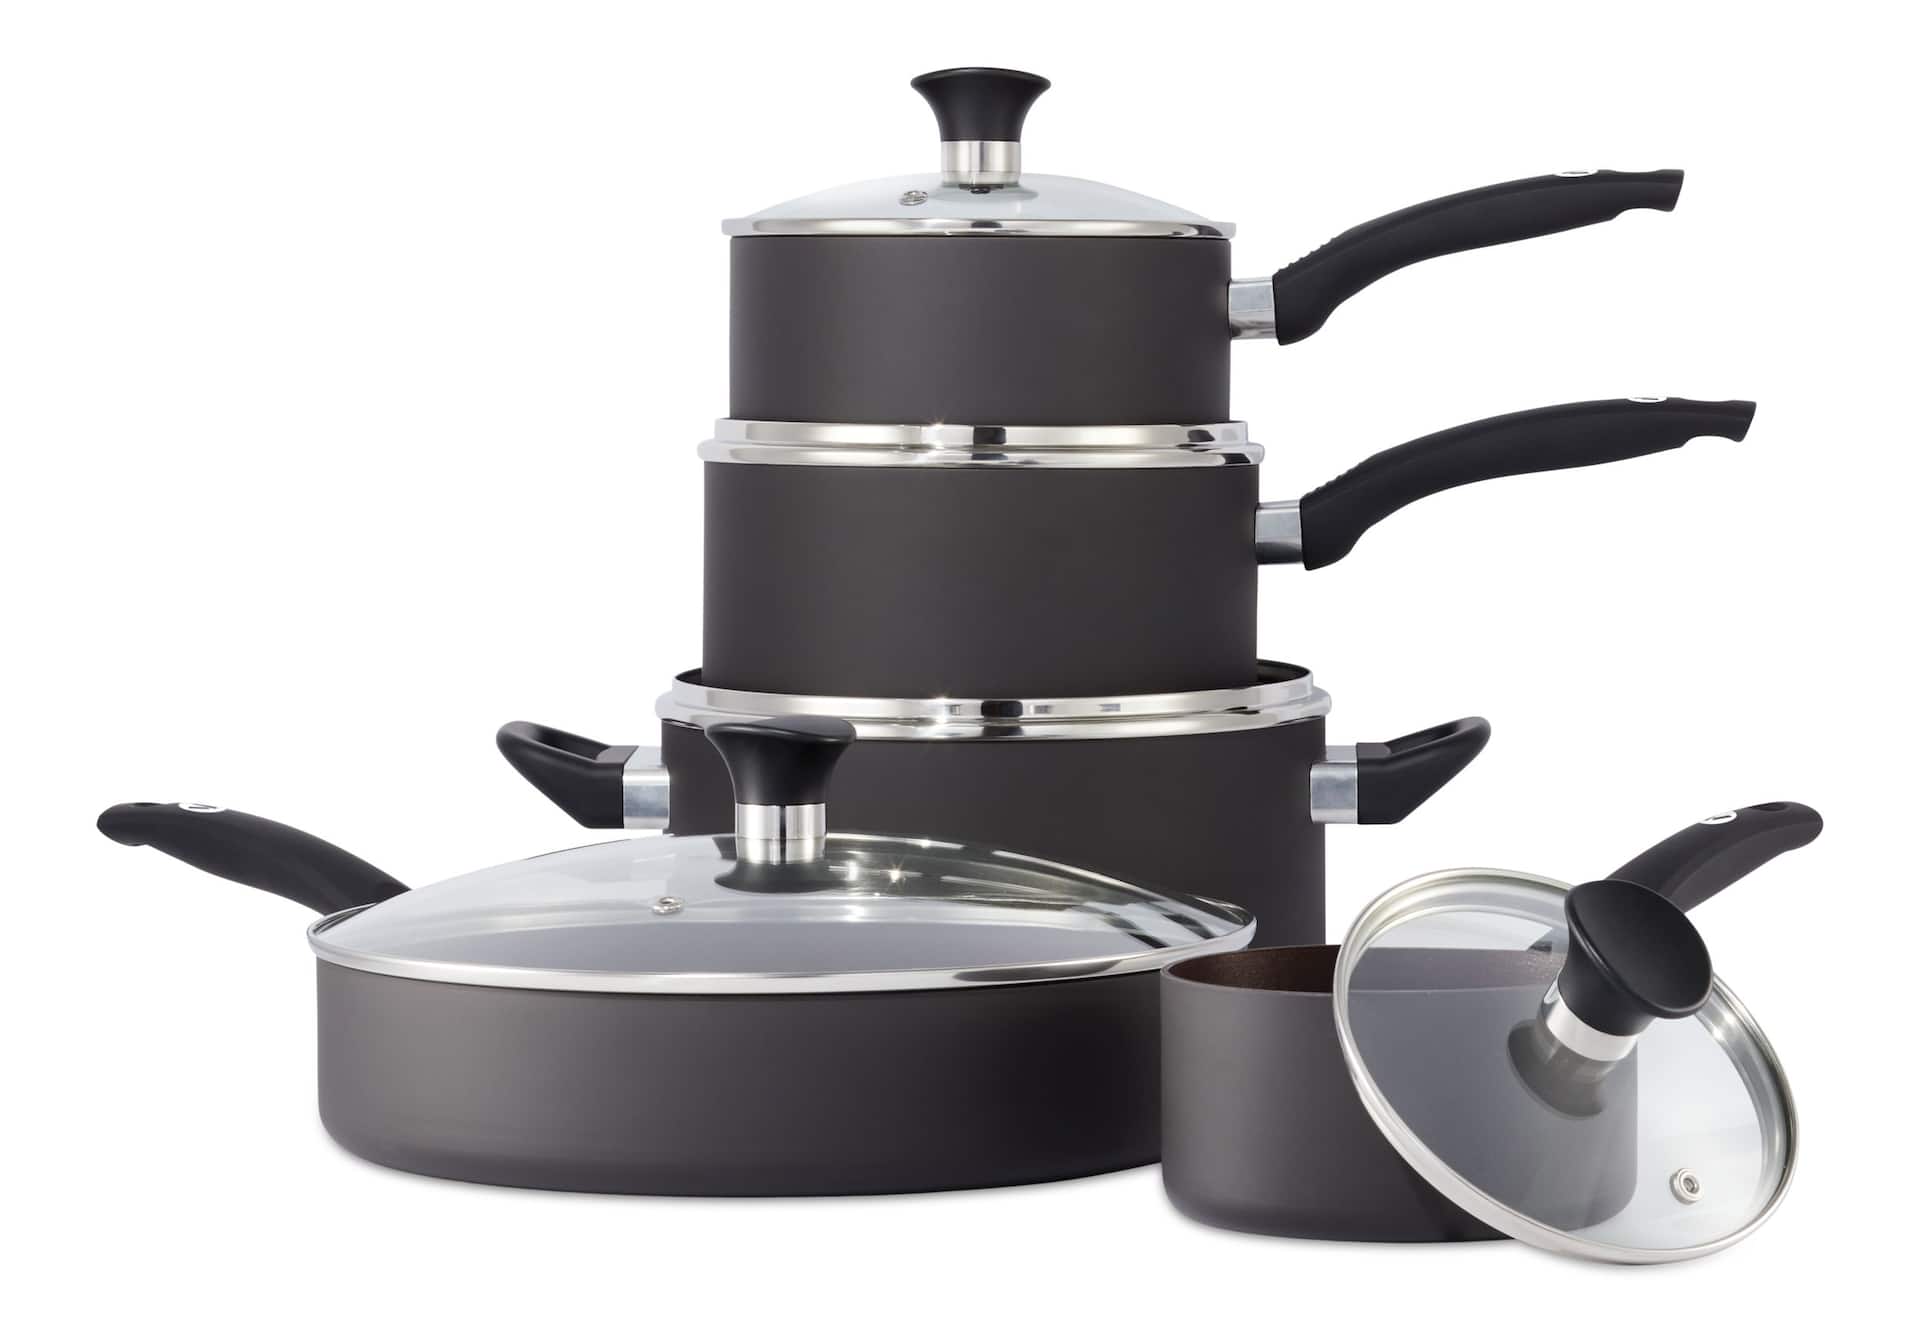 PADERNO Classic Cookware Set, Non-Stick, PFOA-Free, Oven Safe, Champagne  Bronze, 12-pc